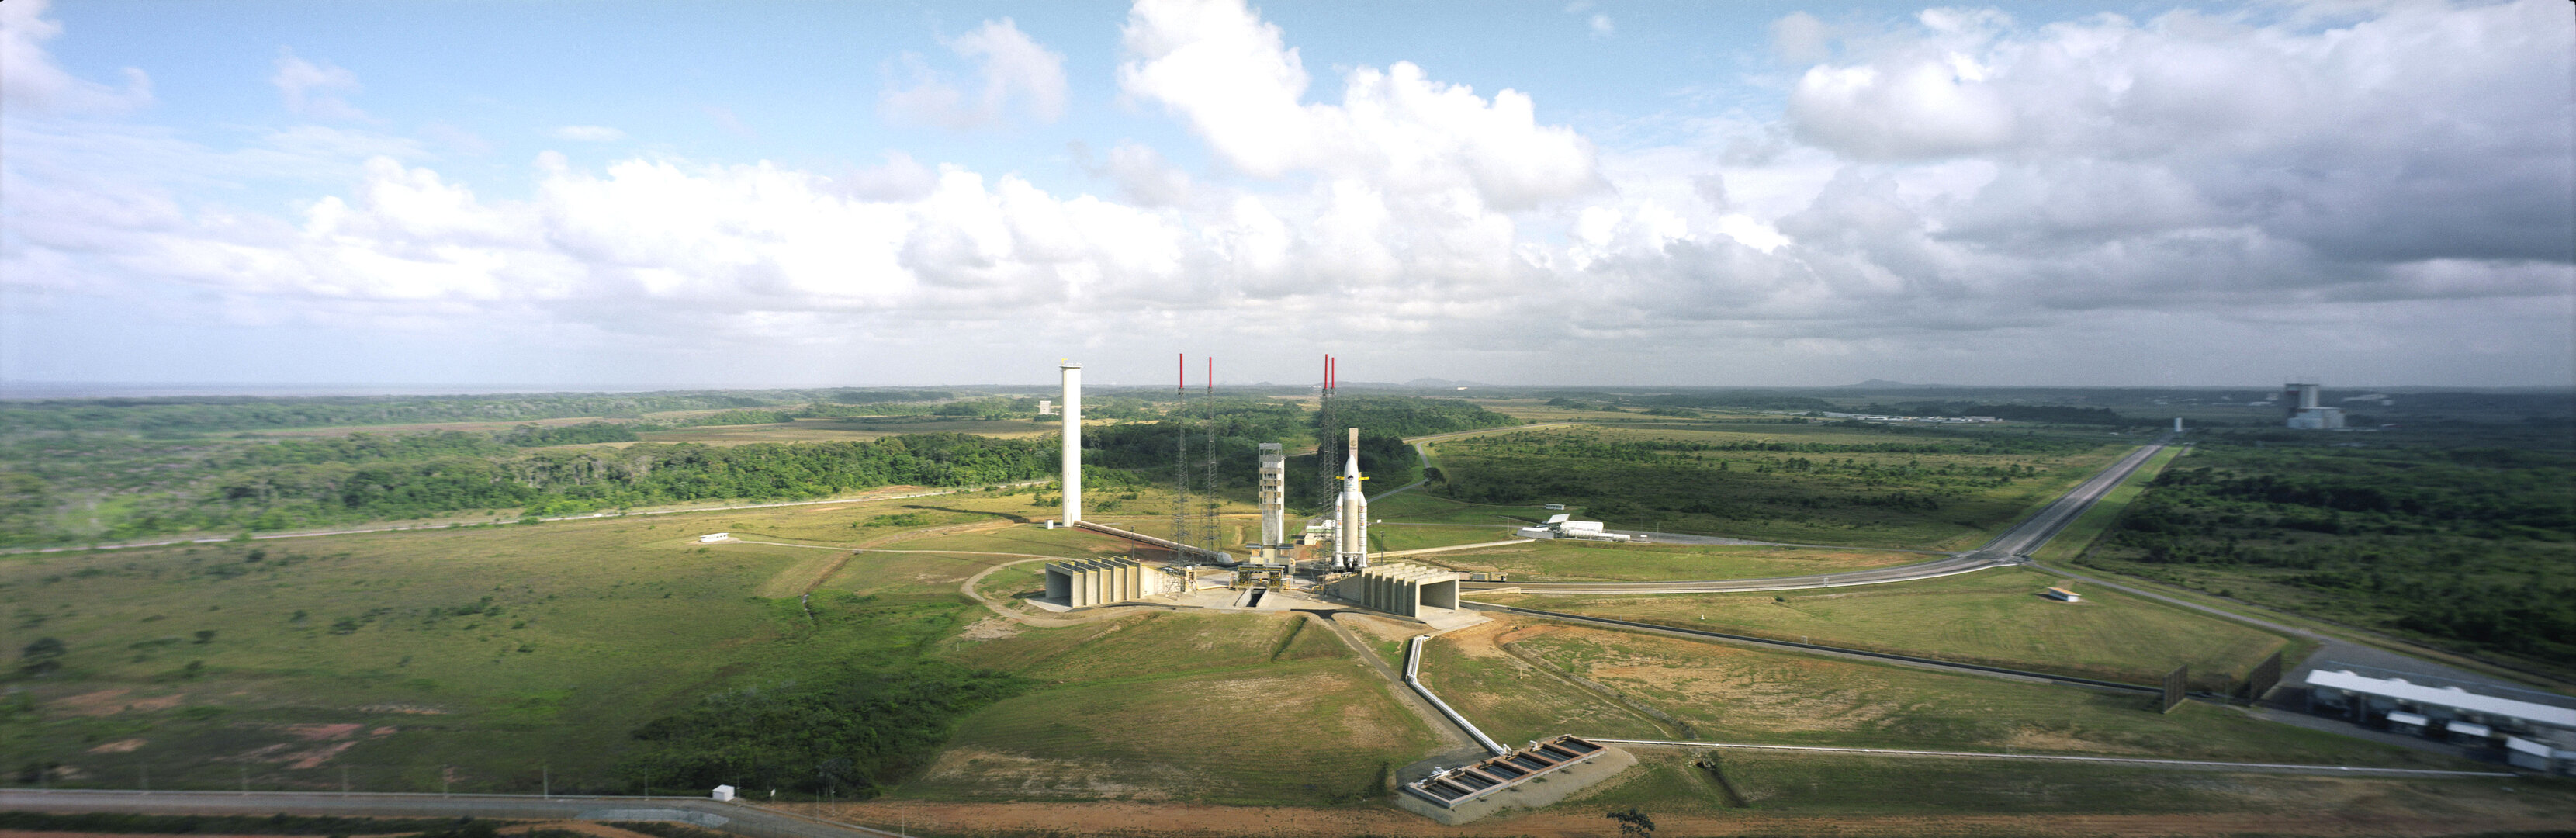 Ariane 5 launch pad